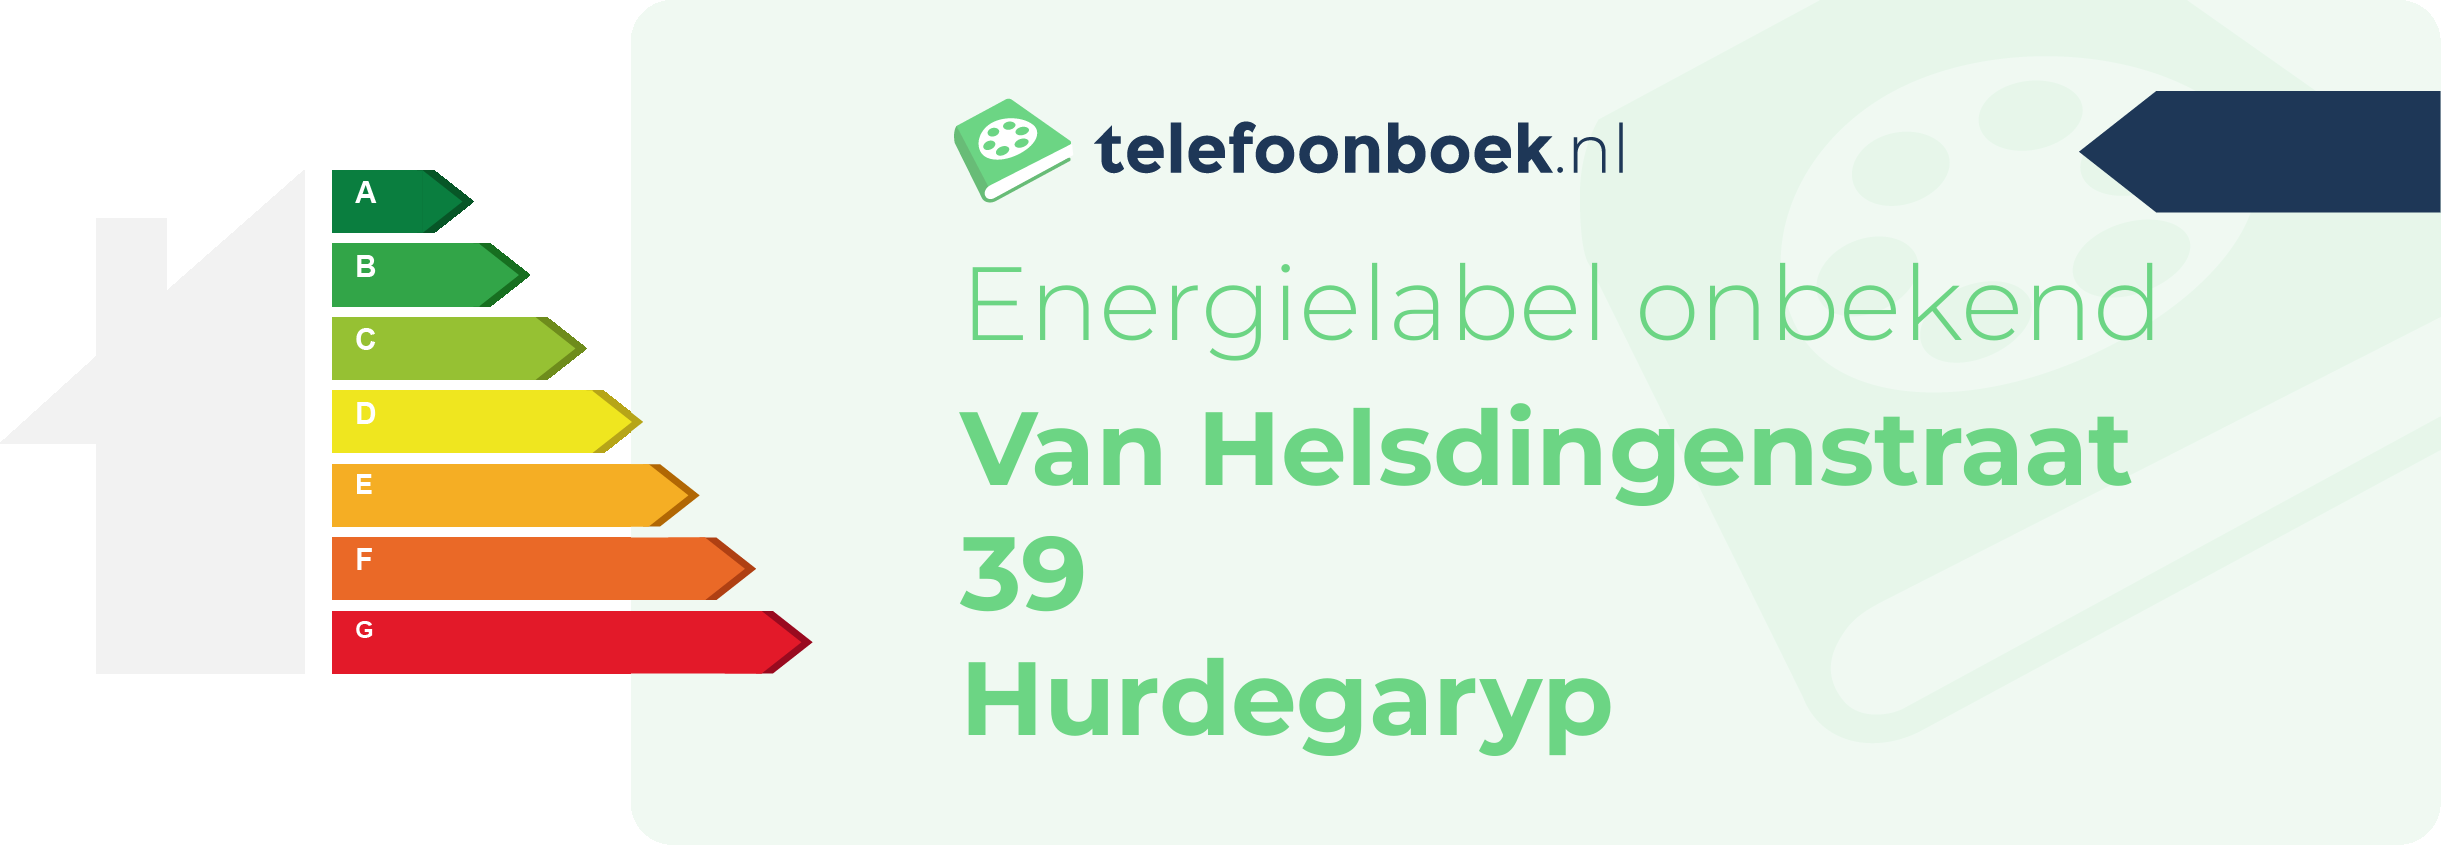 Energielabel Van Helsdingenstraat 39 Hurdegaryp